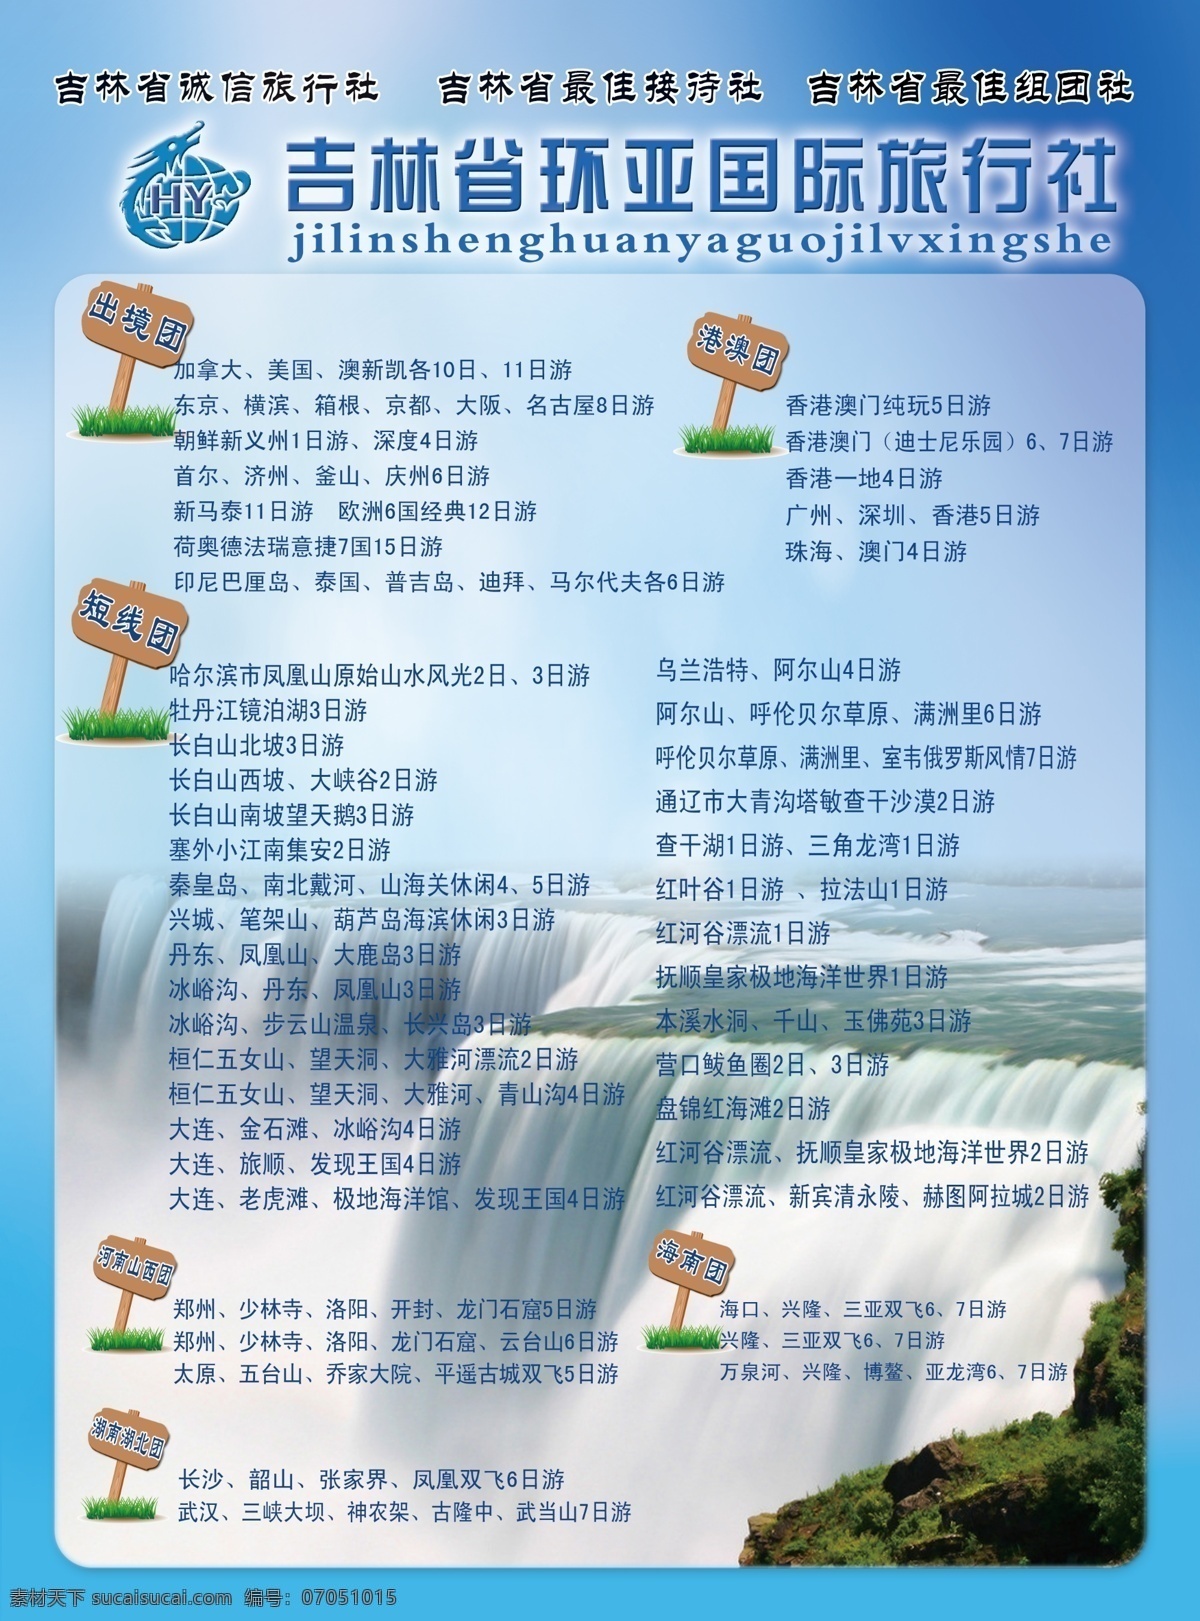 旅行社传单 竖版 蓝色背景 瀑布 旅游路线 广告设计模板 源文件